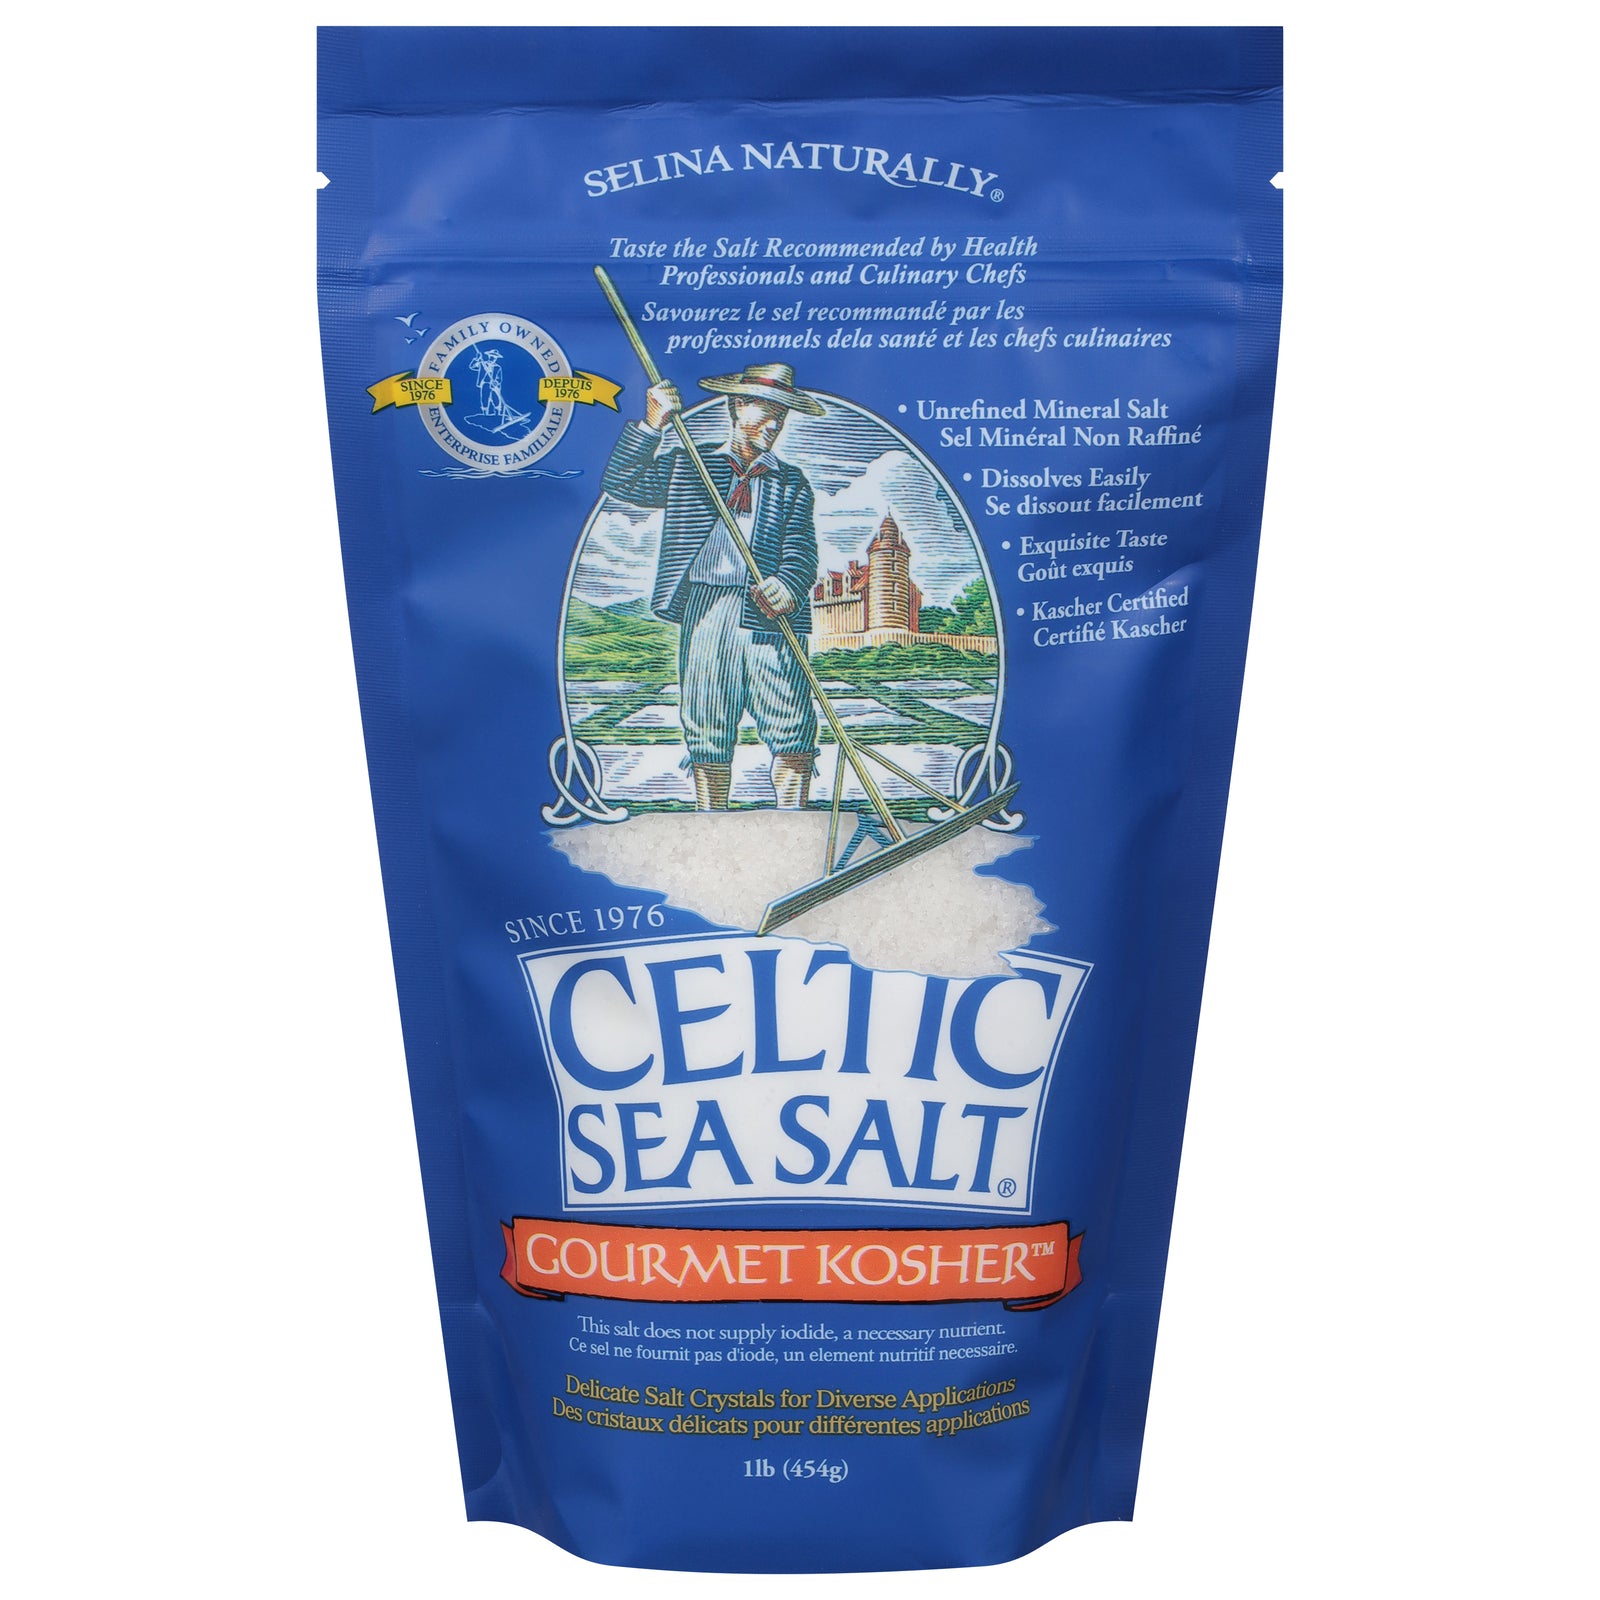 Celtic Sea Salt - Salt Bag Gourmet Kosher - Case of 6-1 LB